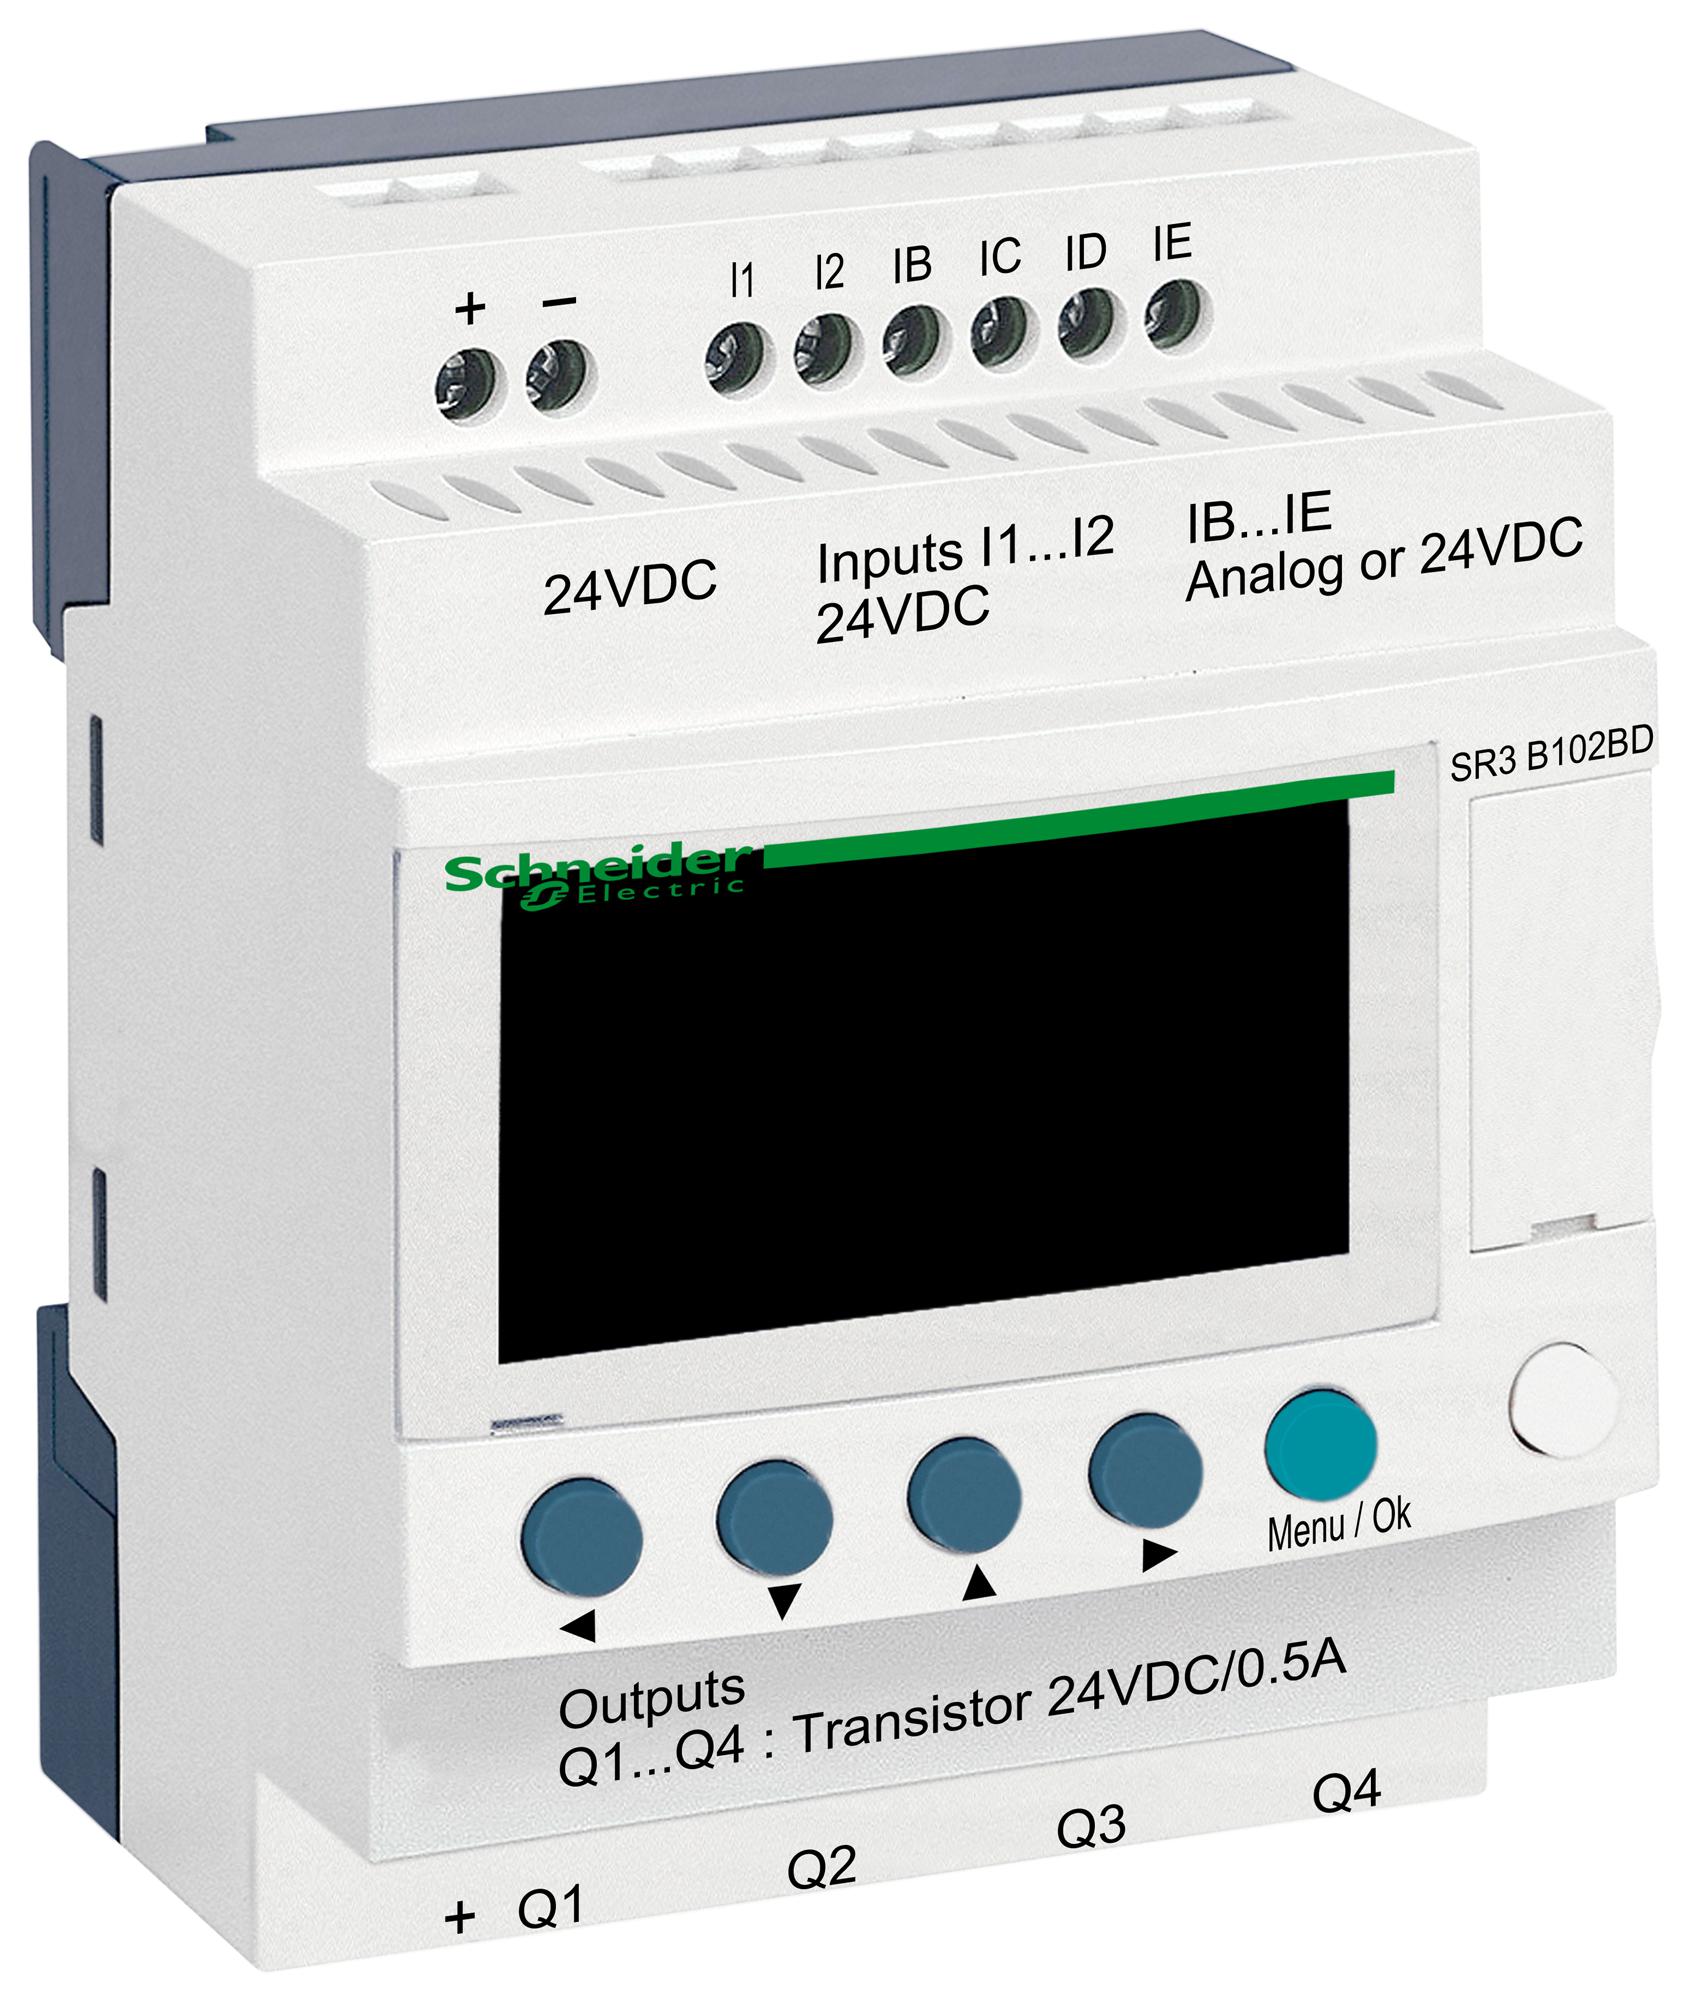 SR3B102BD COMPACT SMART RELAY, 6I/P, 4O/P DIGITAL SCHNEIDER ELECTRIC